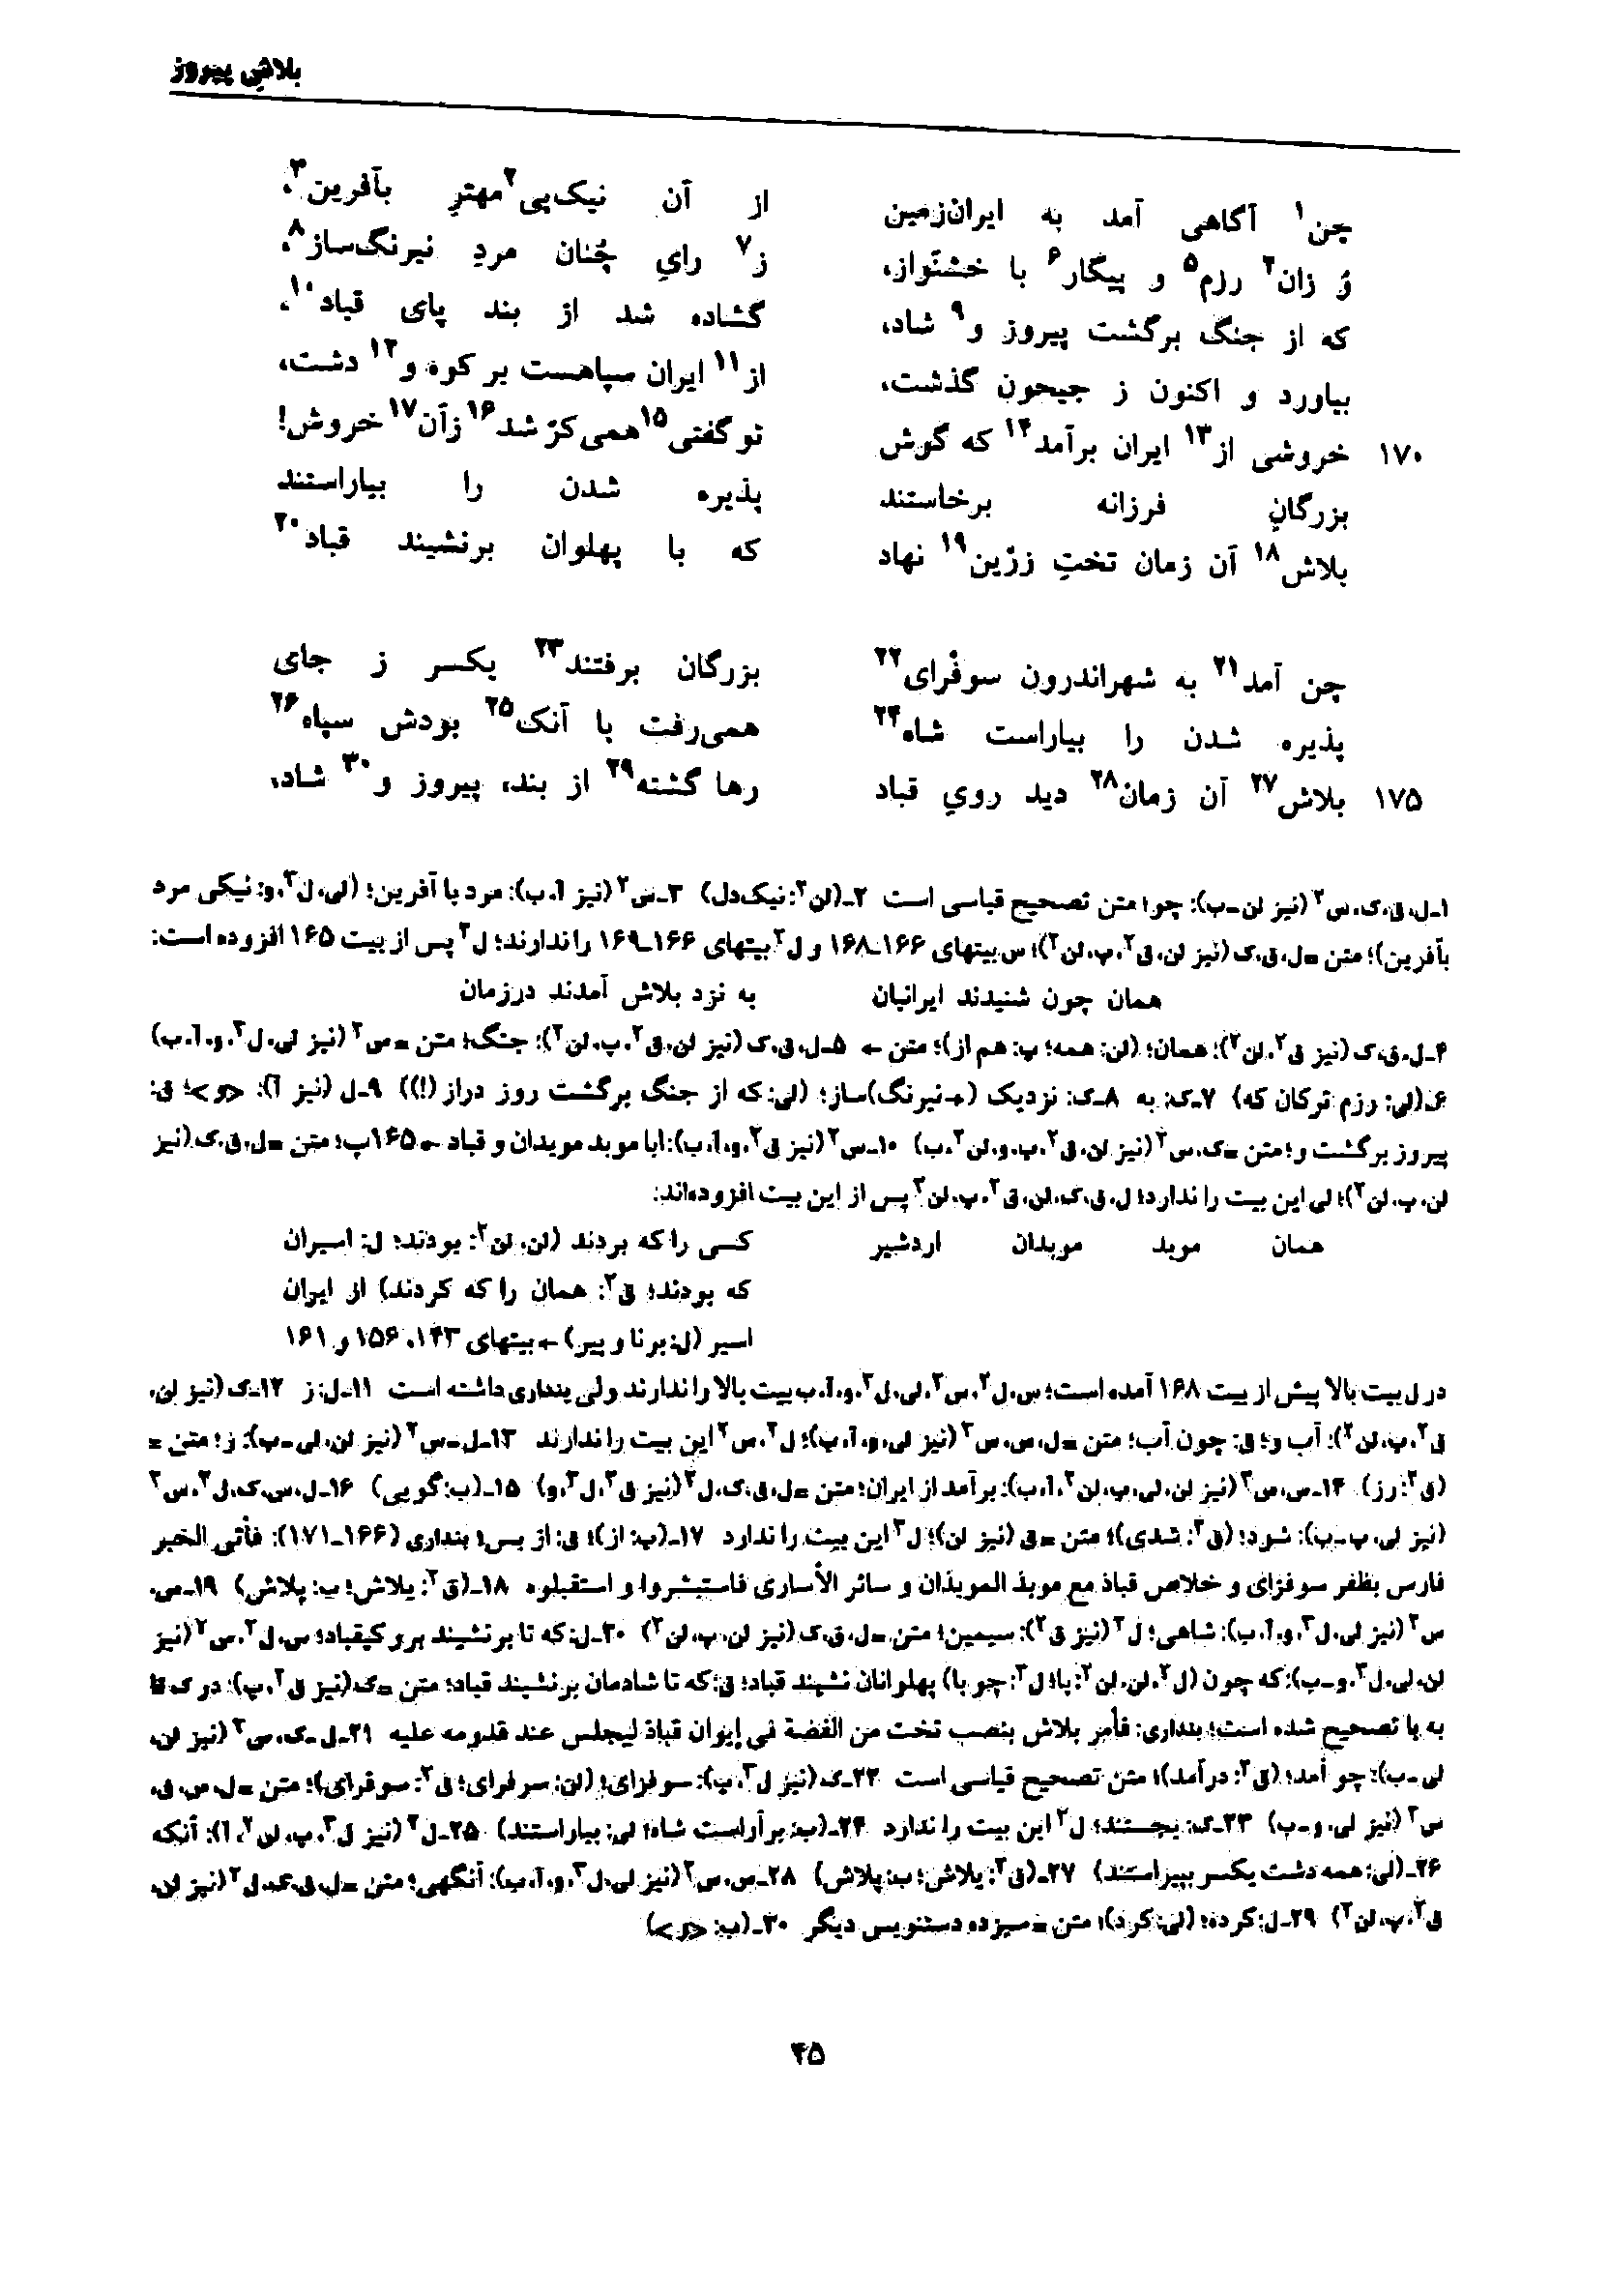 vol. 7, p. 45